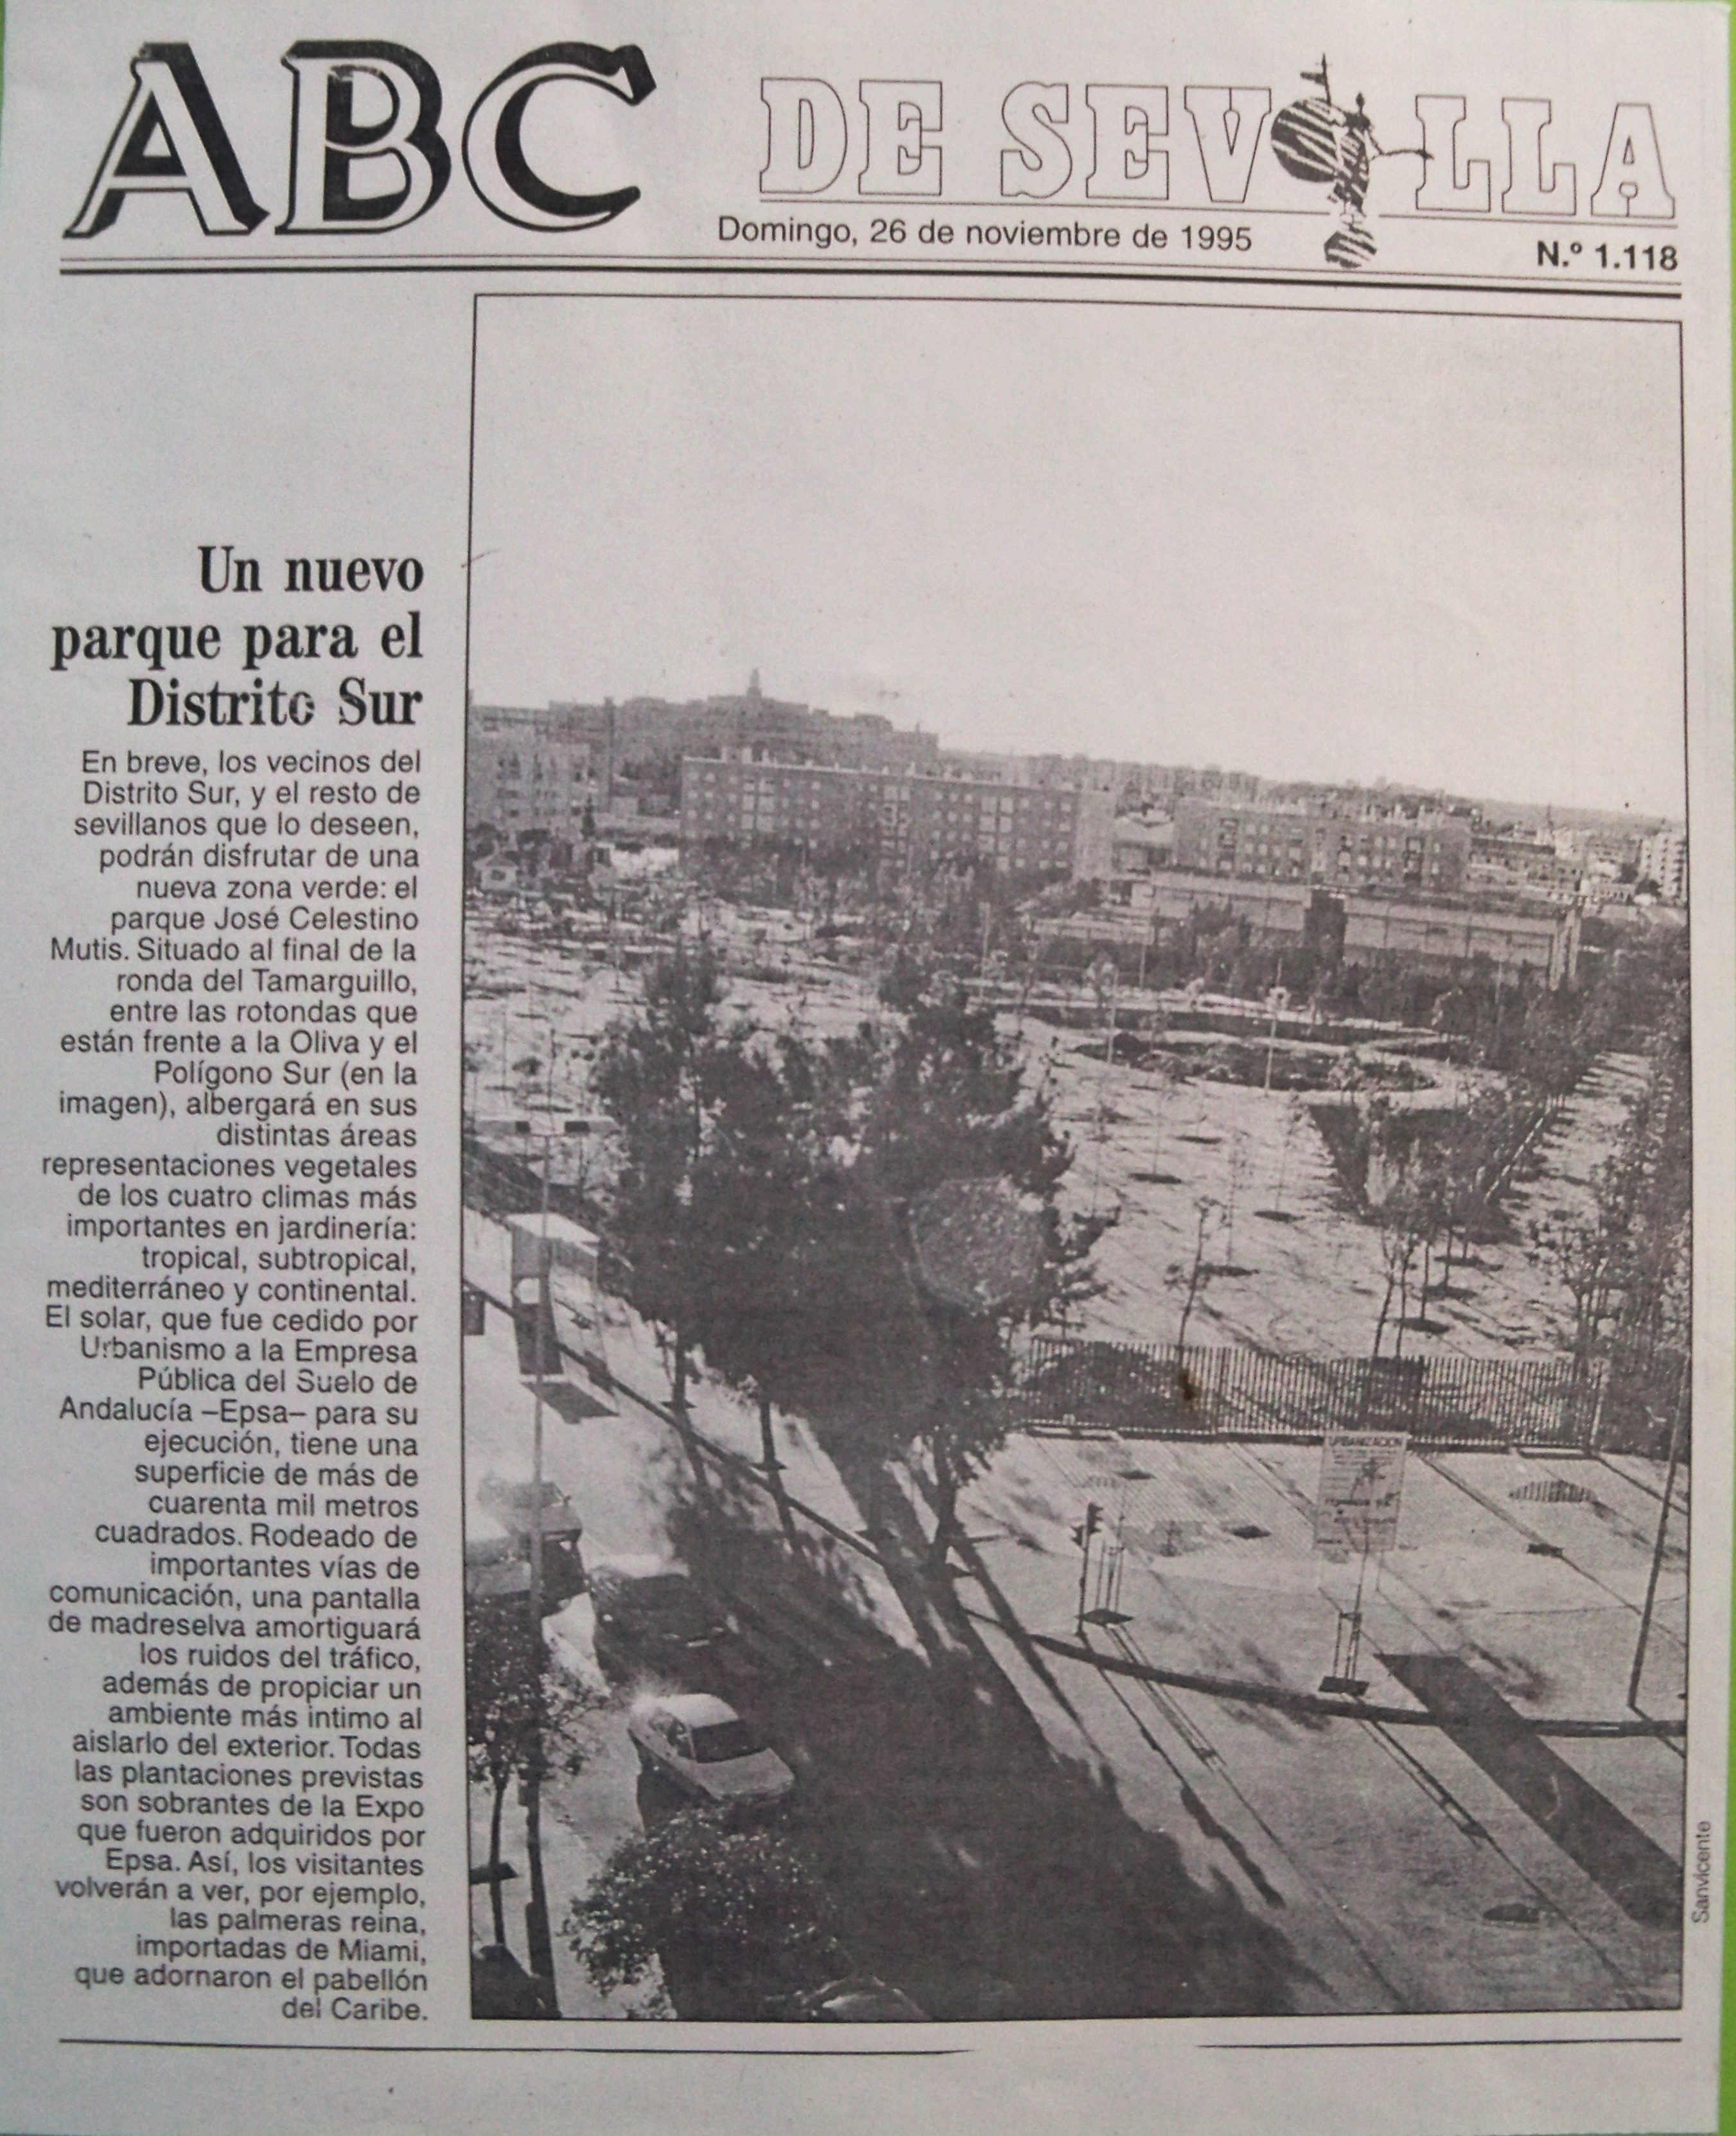 La prensa recoge la inauguración del parque el día 19 de junio de 1997